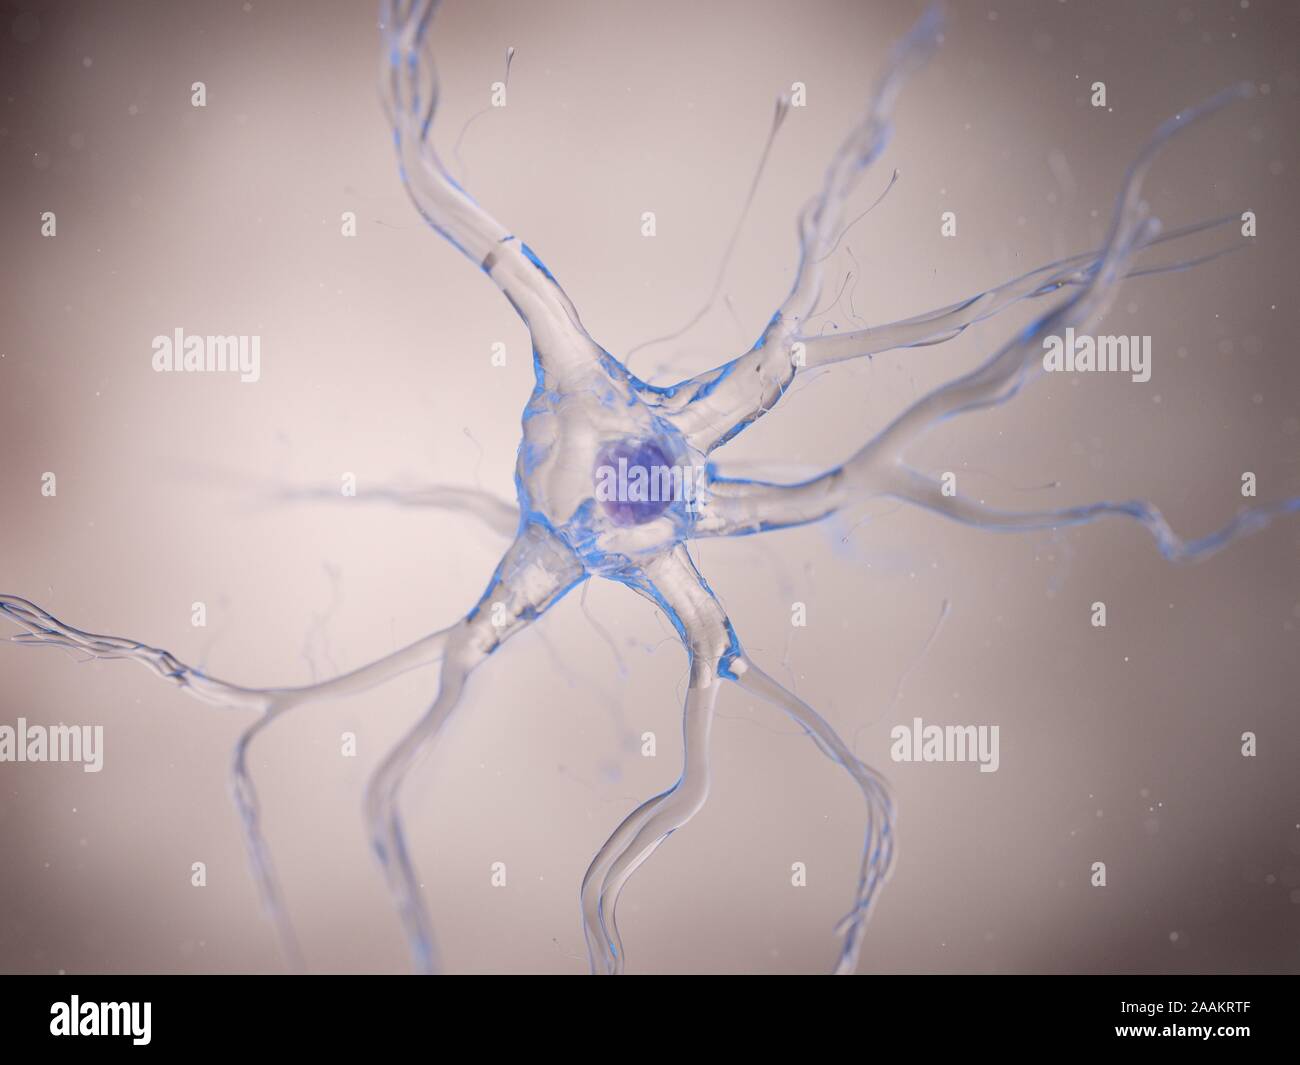 Cellule nerveuse, illustration de l'ordinateur. Banque D'Images